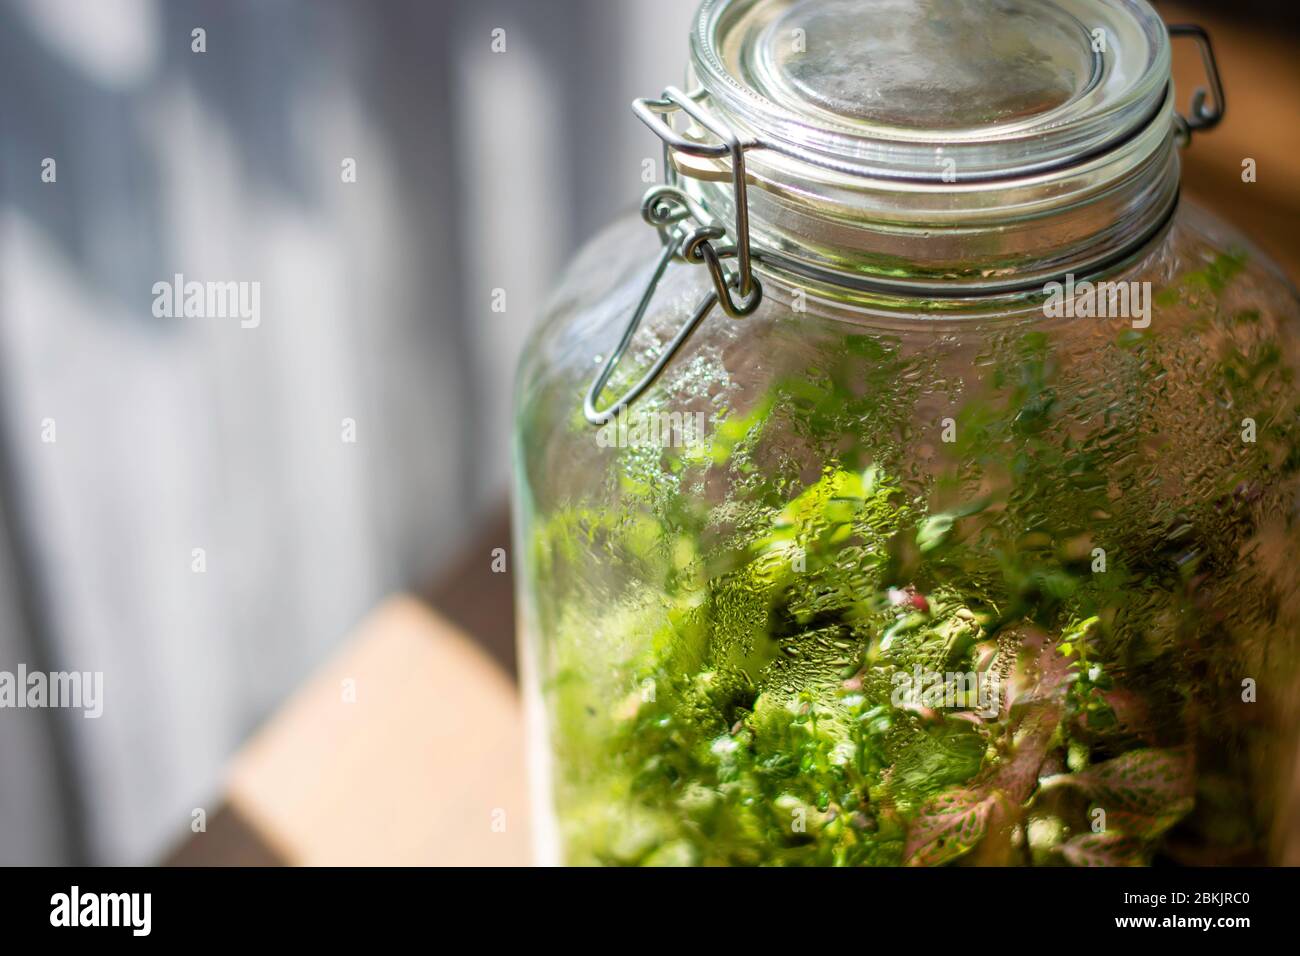 Piccolo Giardino In Bottiglia Di Vetro Immagini E Fotos Stock Alamy